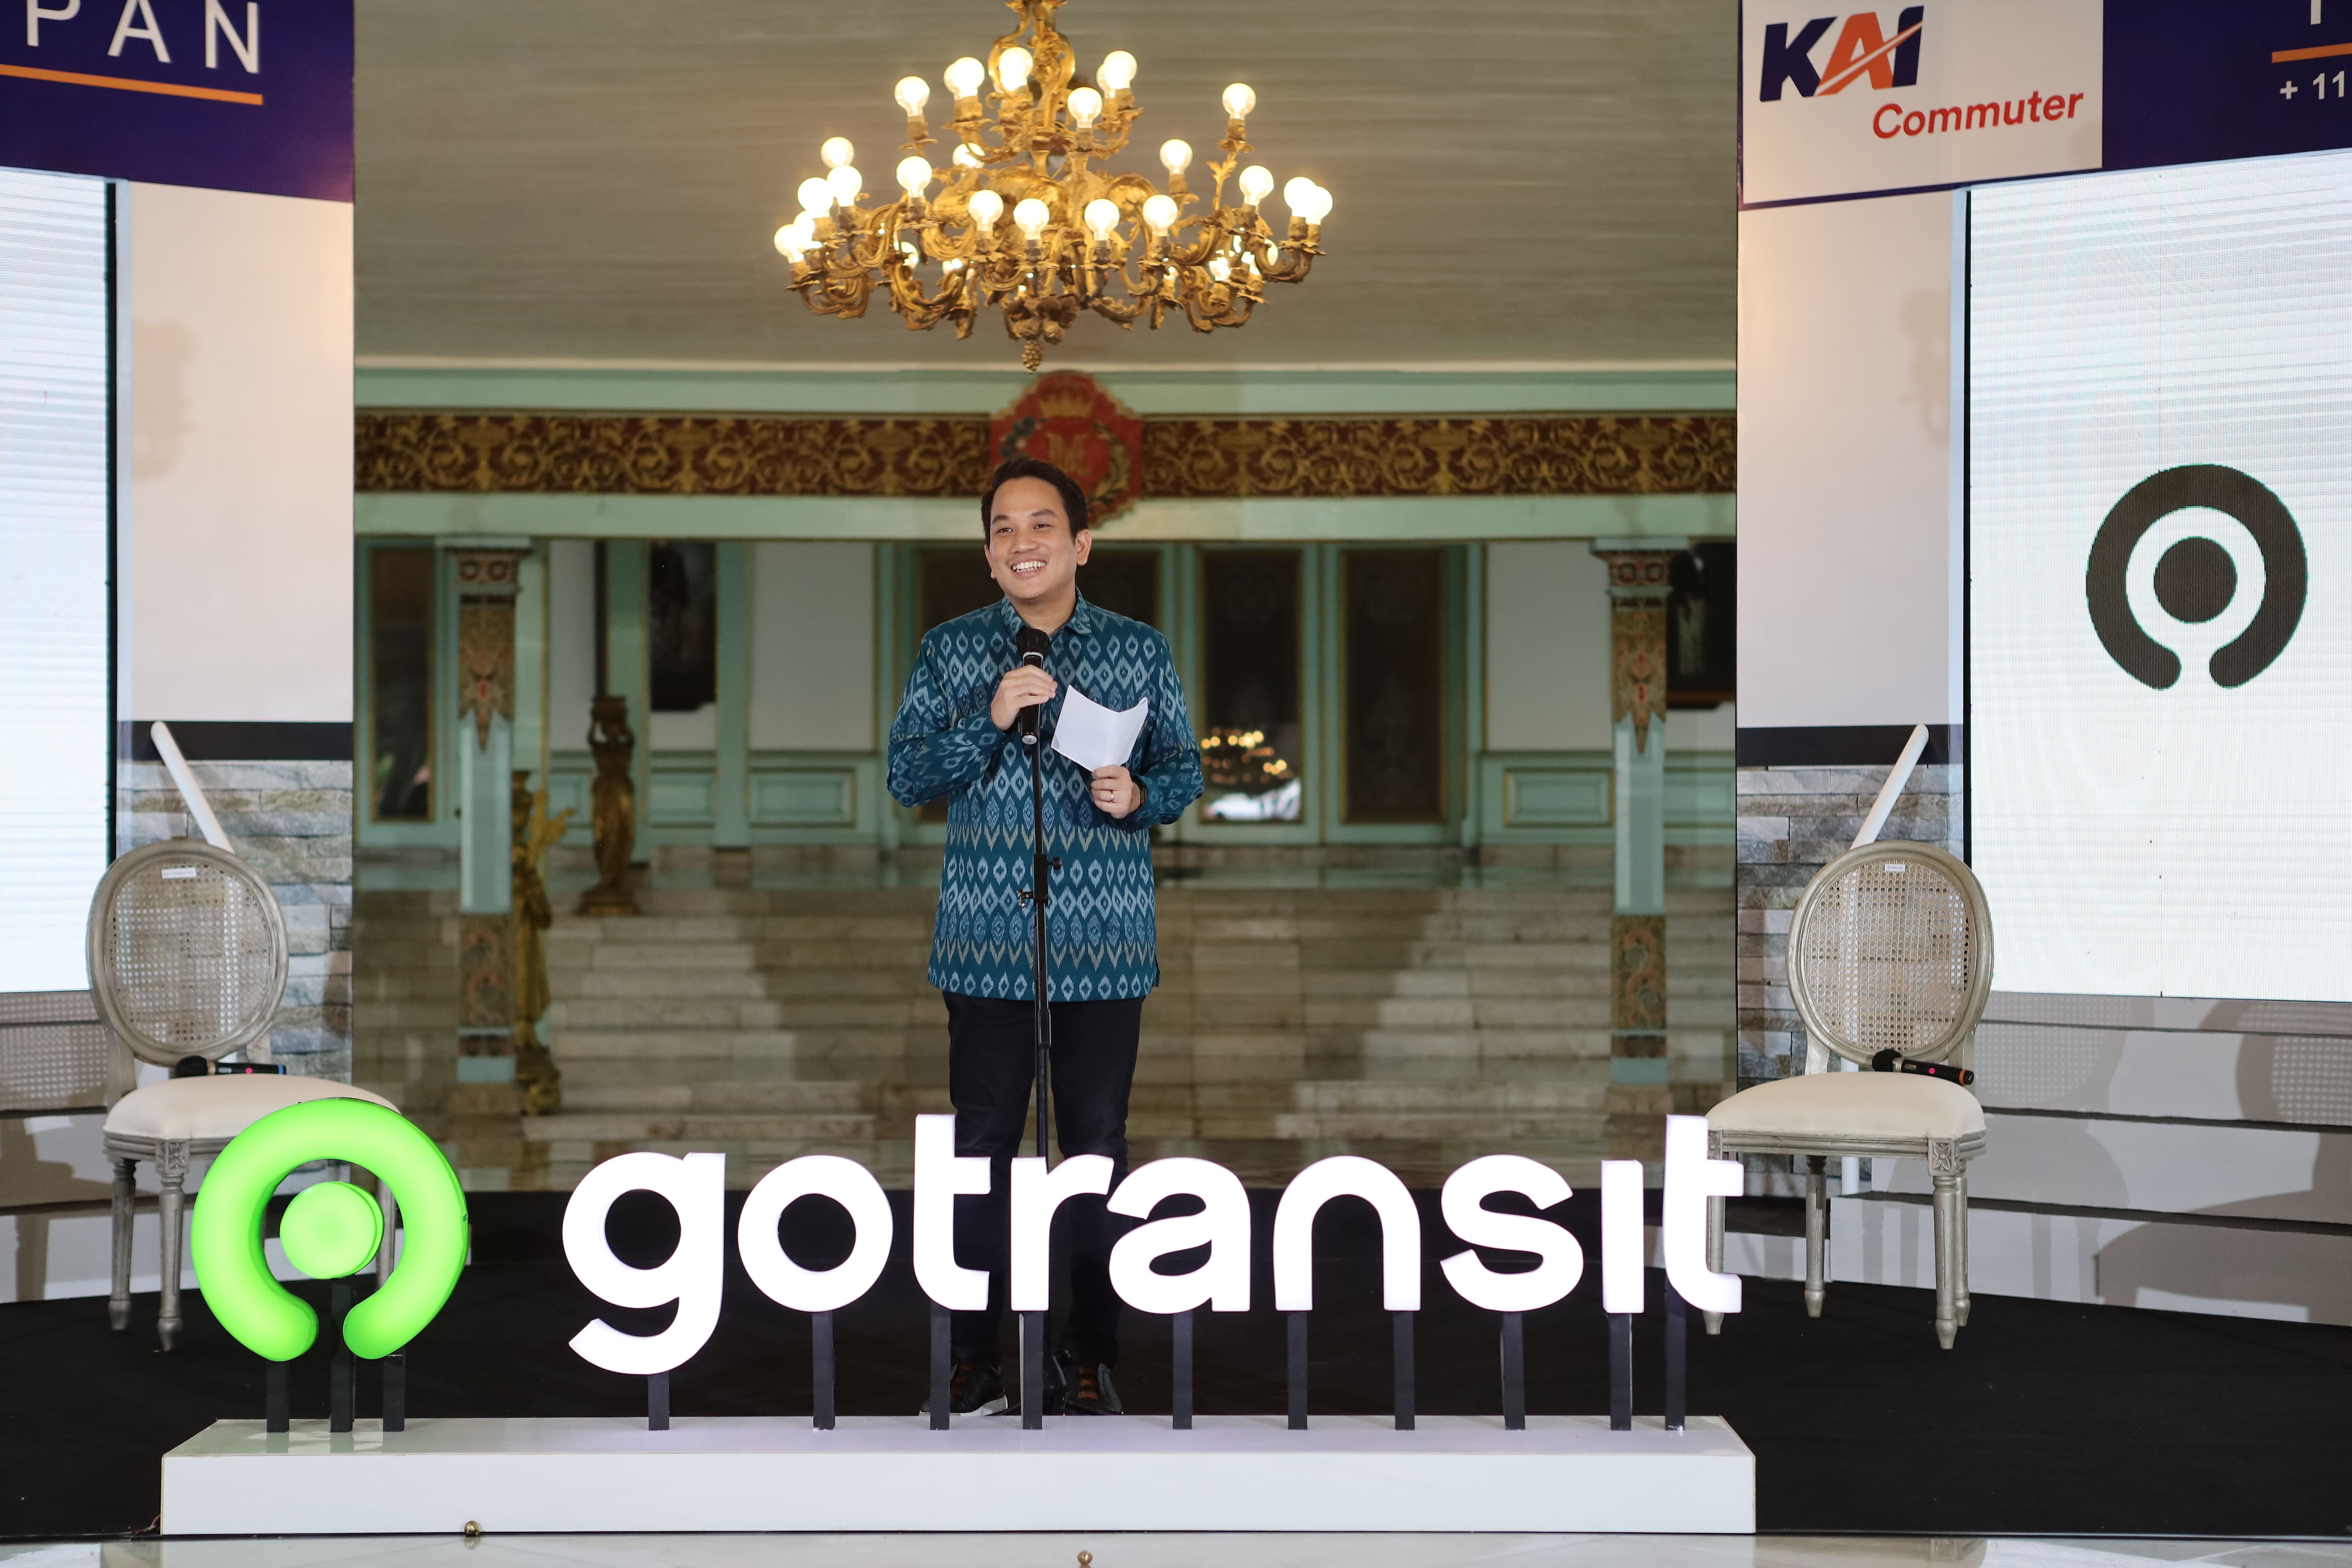 Kolaborasi Gojek dan KAI Commuter Perluas GoTransit ke Solo dan Jogja